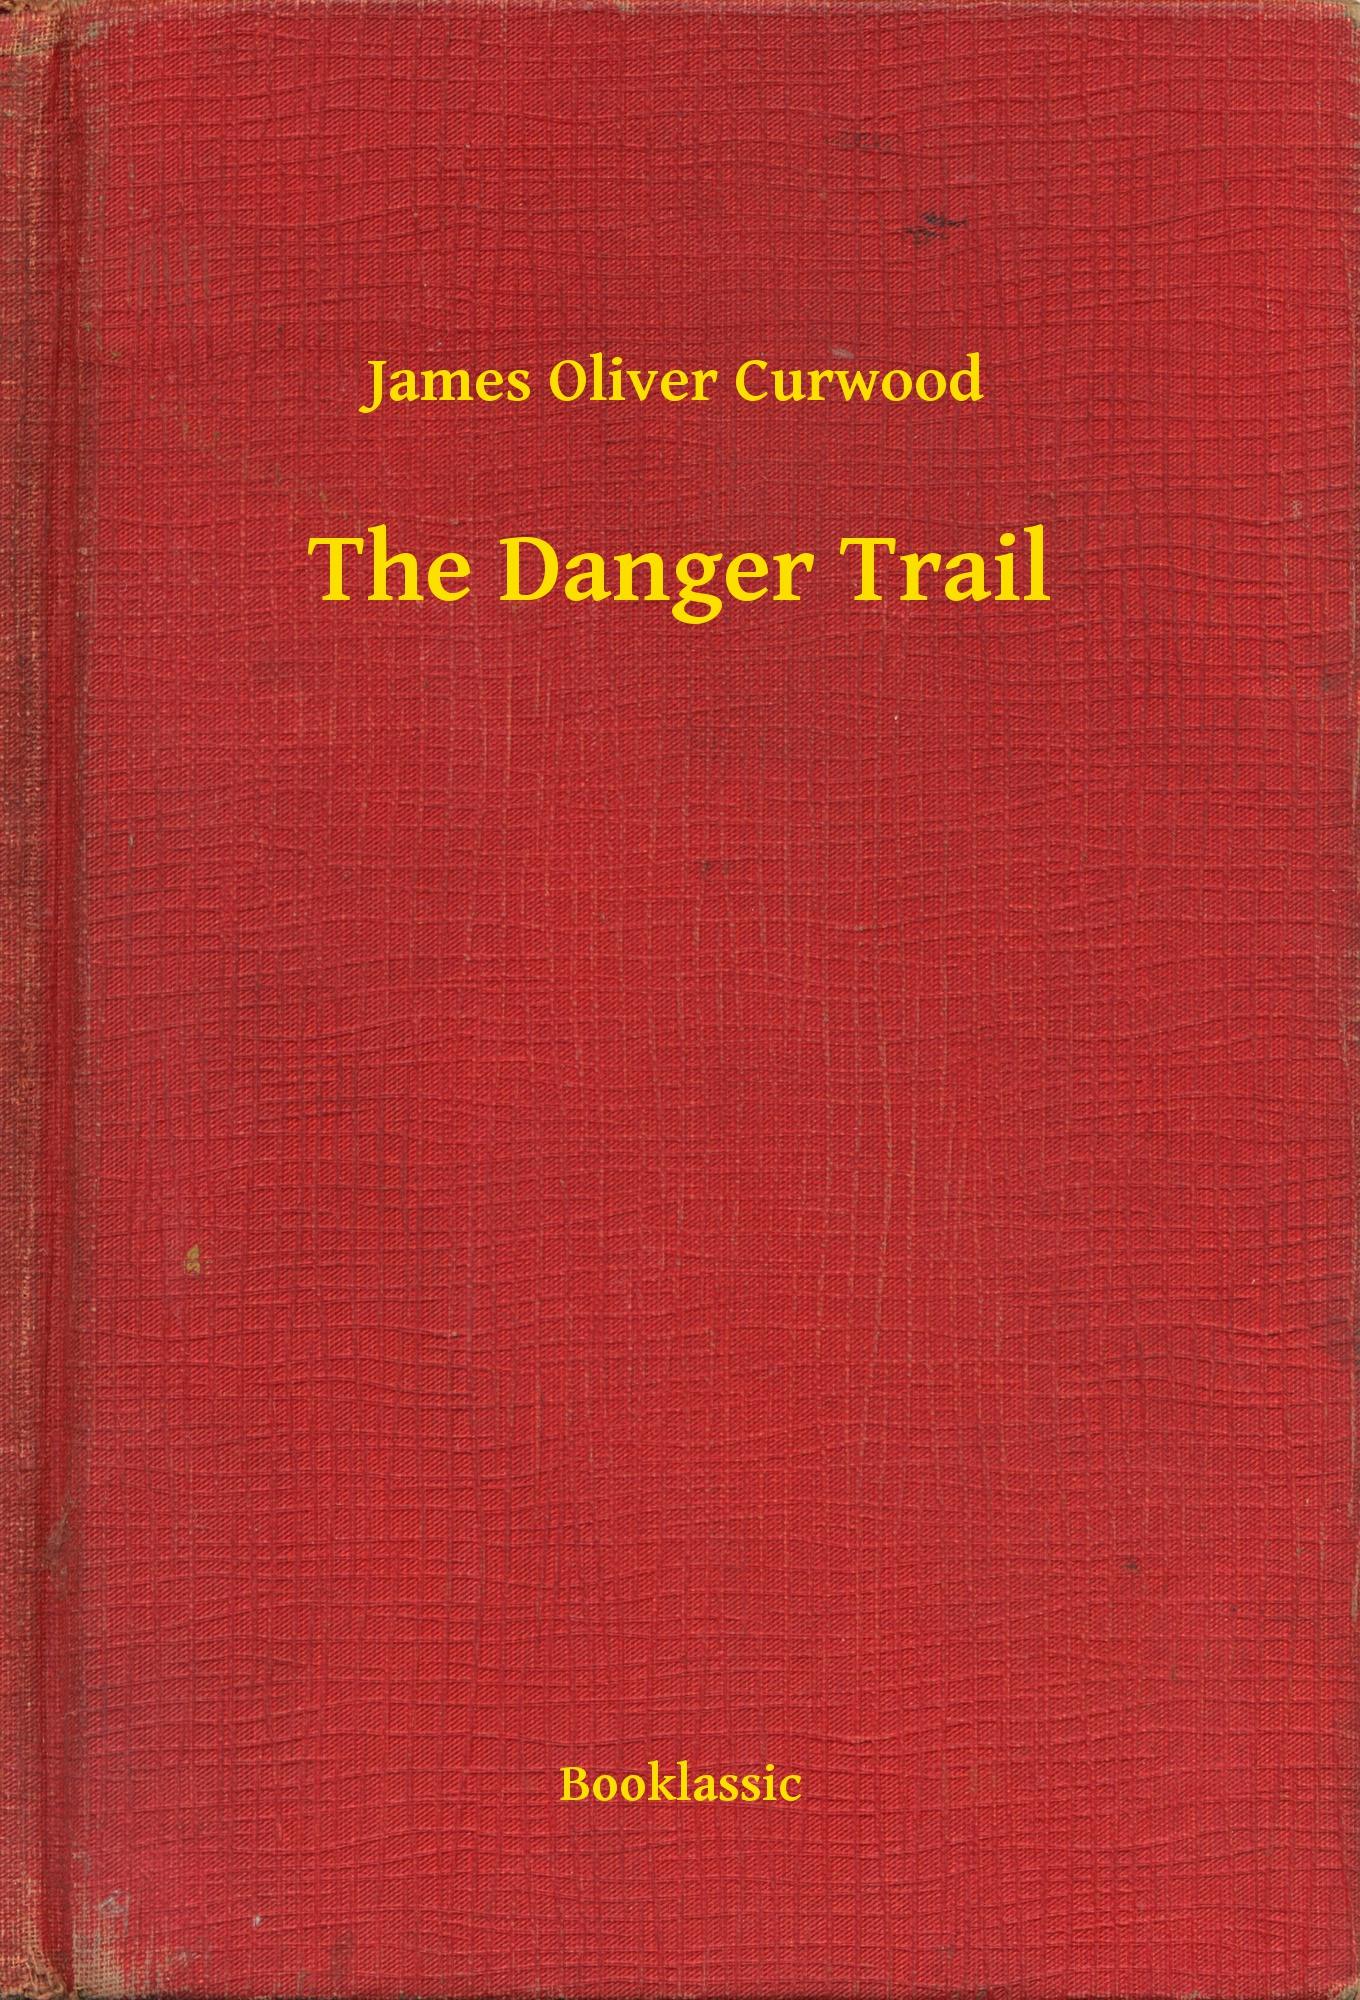 The Danger Trail - James Oliver Curwood